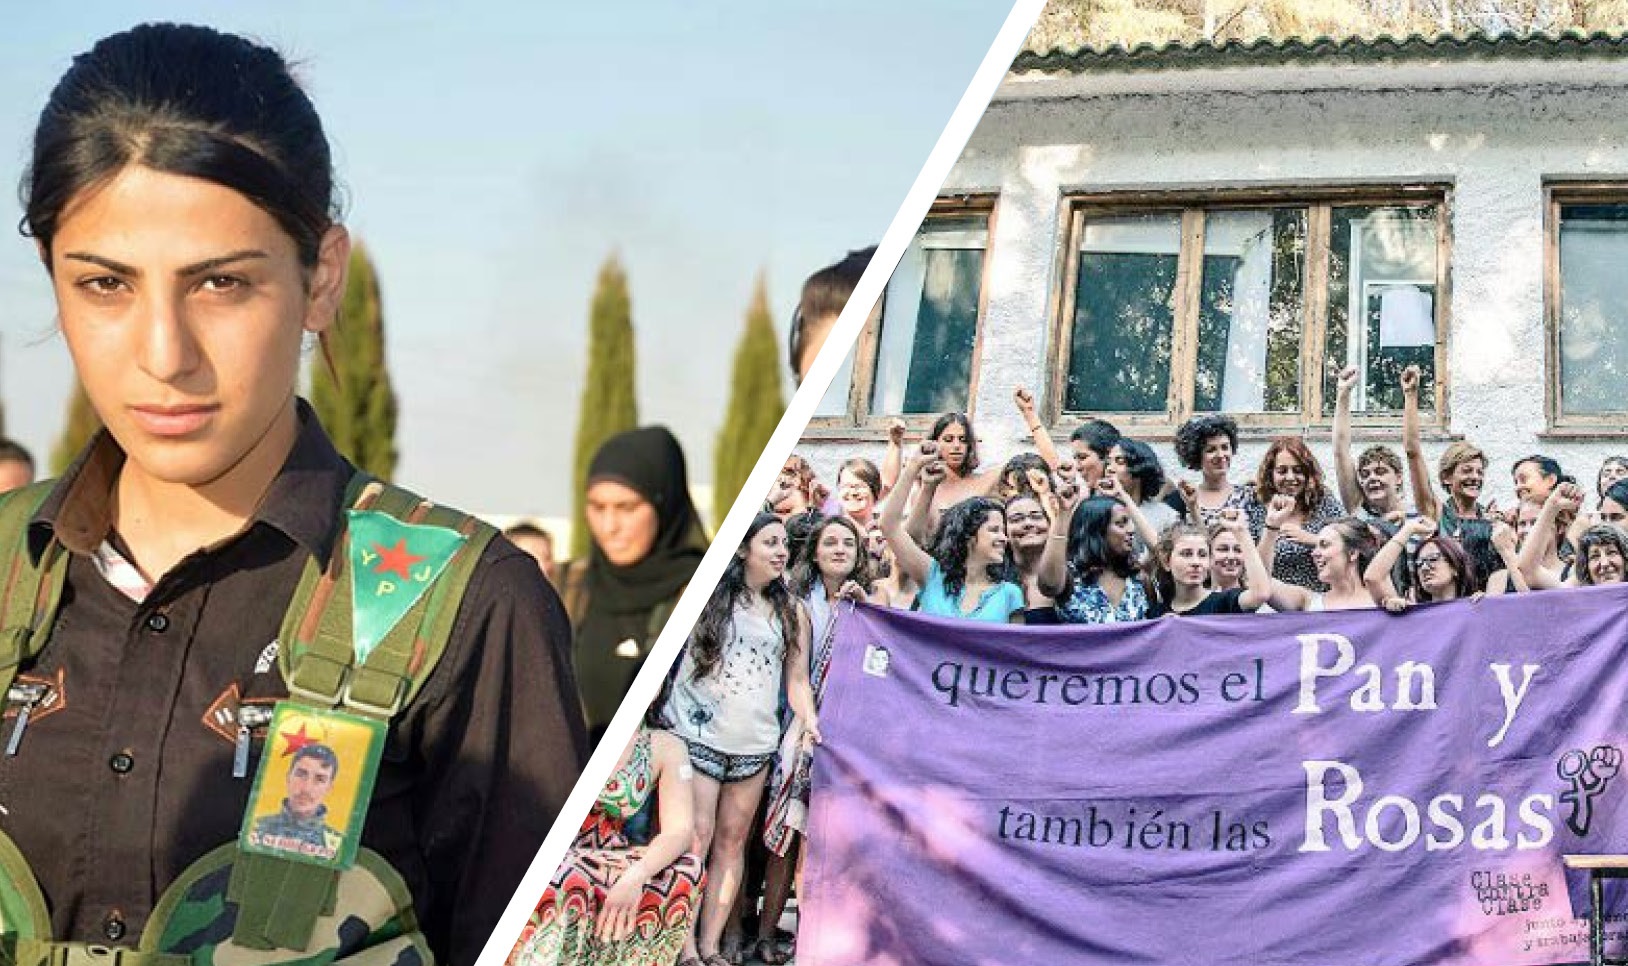 Feministischer Workshop-Nachmittag in München: Von Rojava über St. Petersburg nach Barcelona